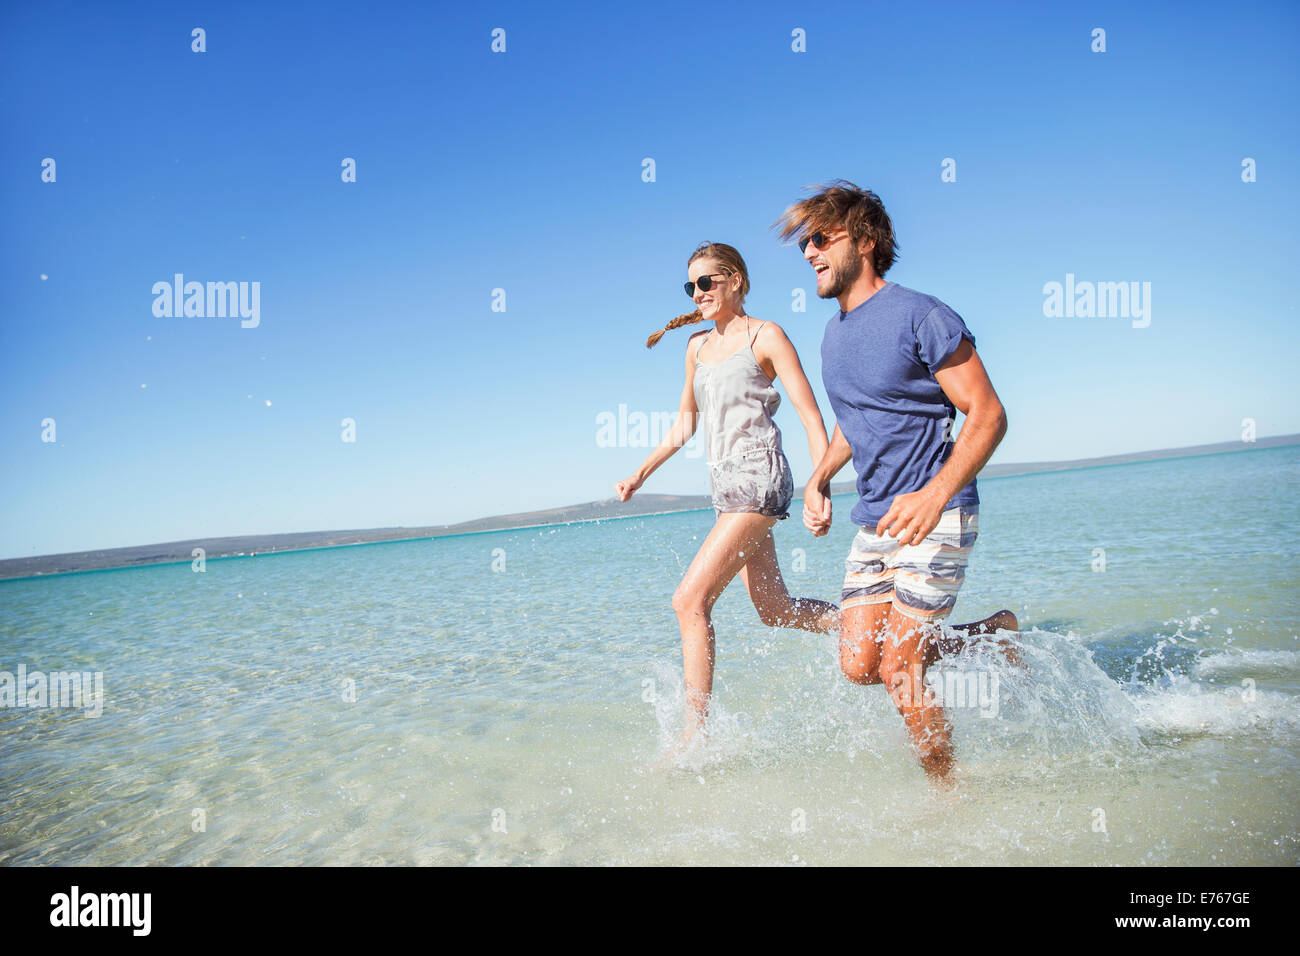 Paar zusammen in Wasser laufen Stockfoto